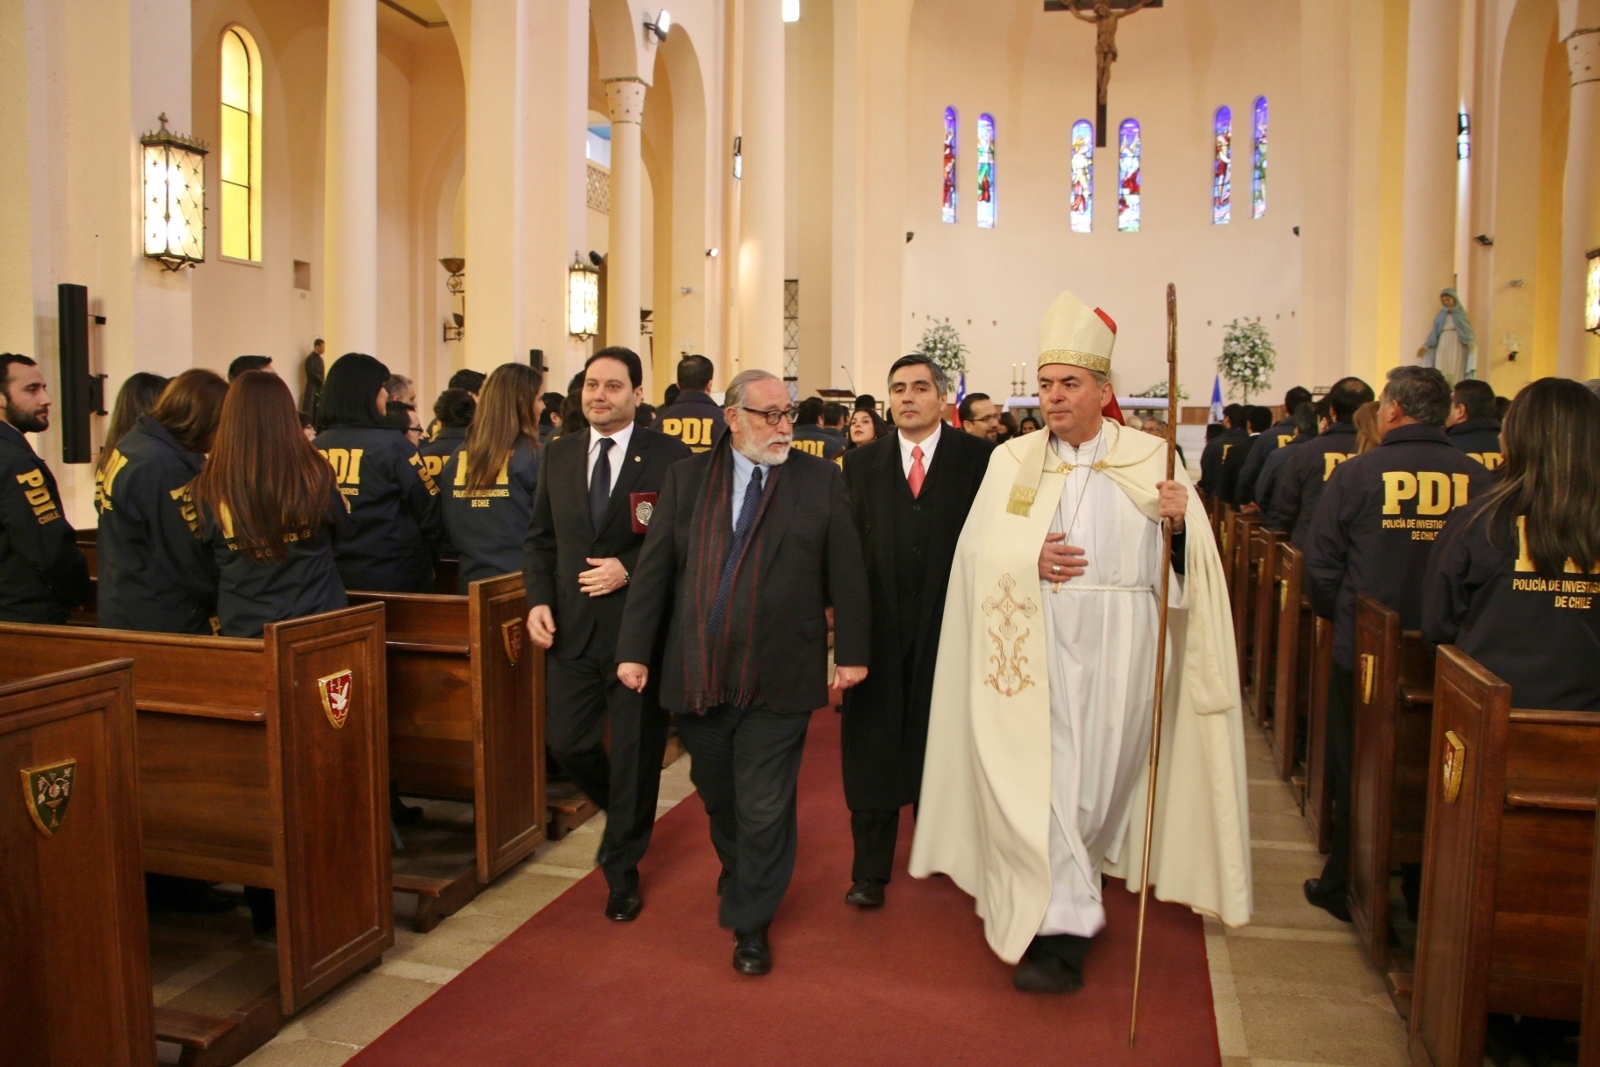 Acto ecuménico en conmemoración del 83° aniversario de la PDI se desarrolla en Talca